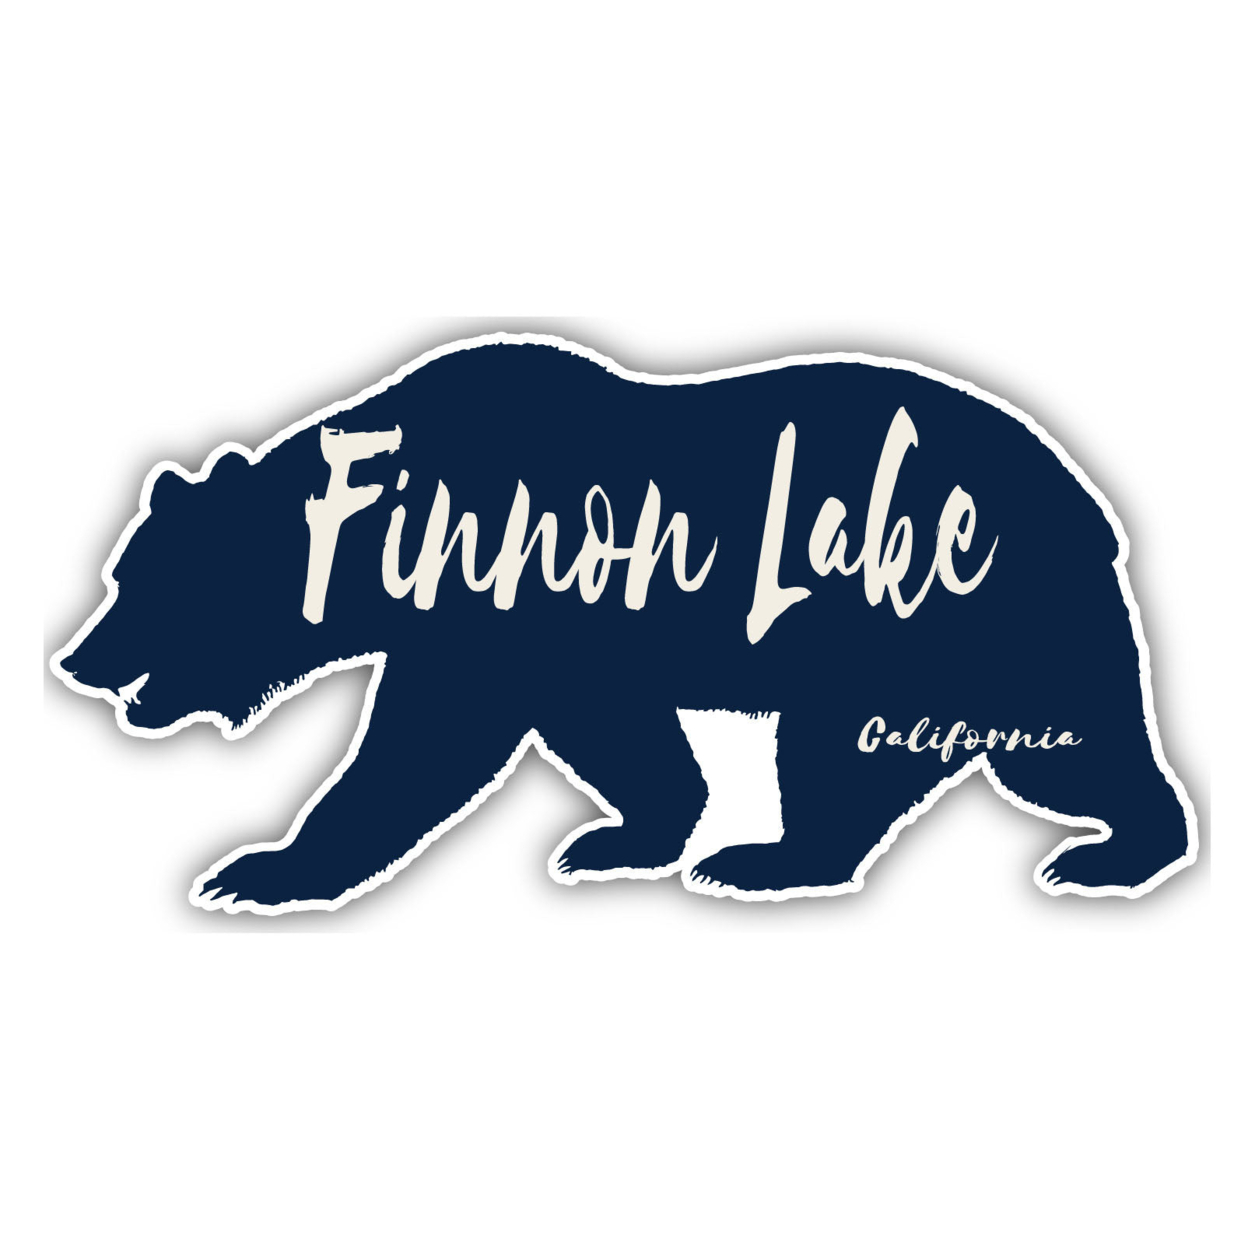 Finnon Lake California Souvenir Decorative Stickers (Choose Theme And Size) - Single Unit, 6-Inch, Tent